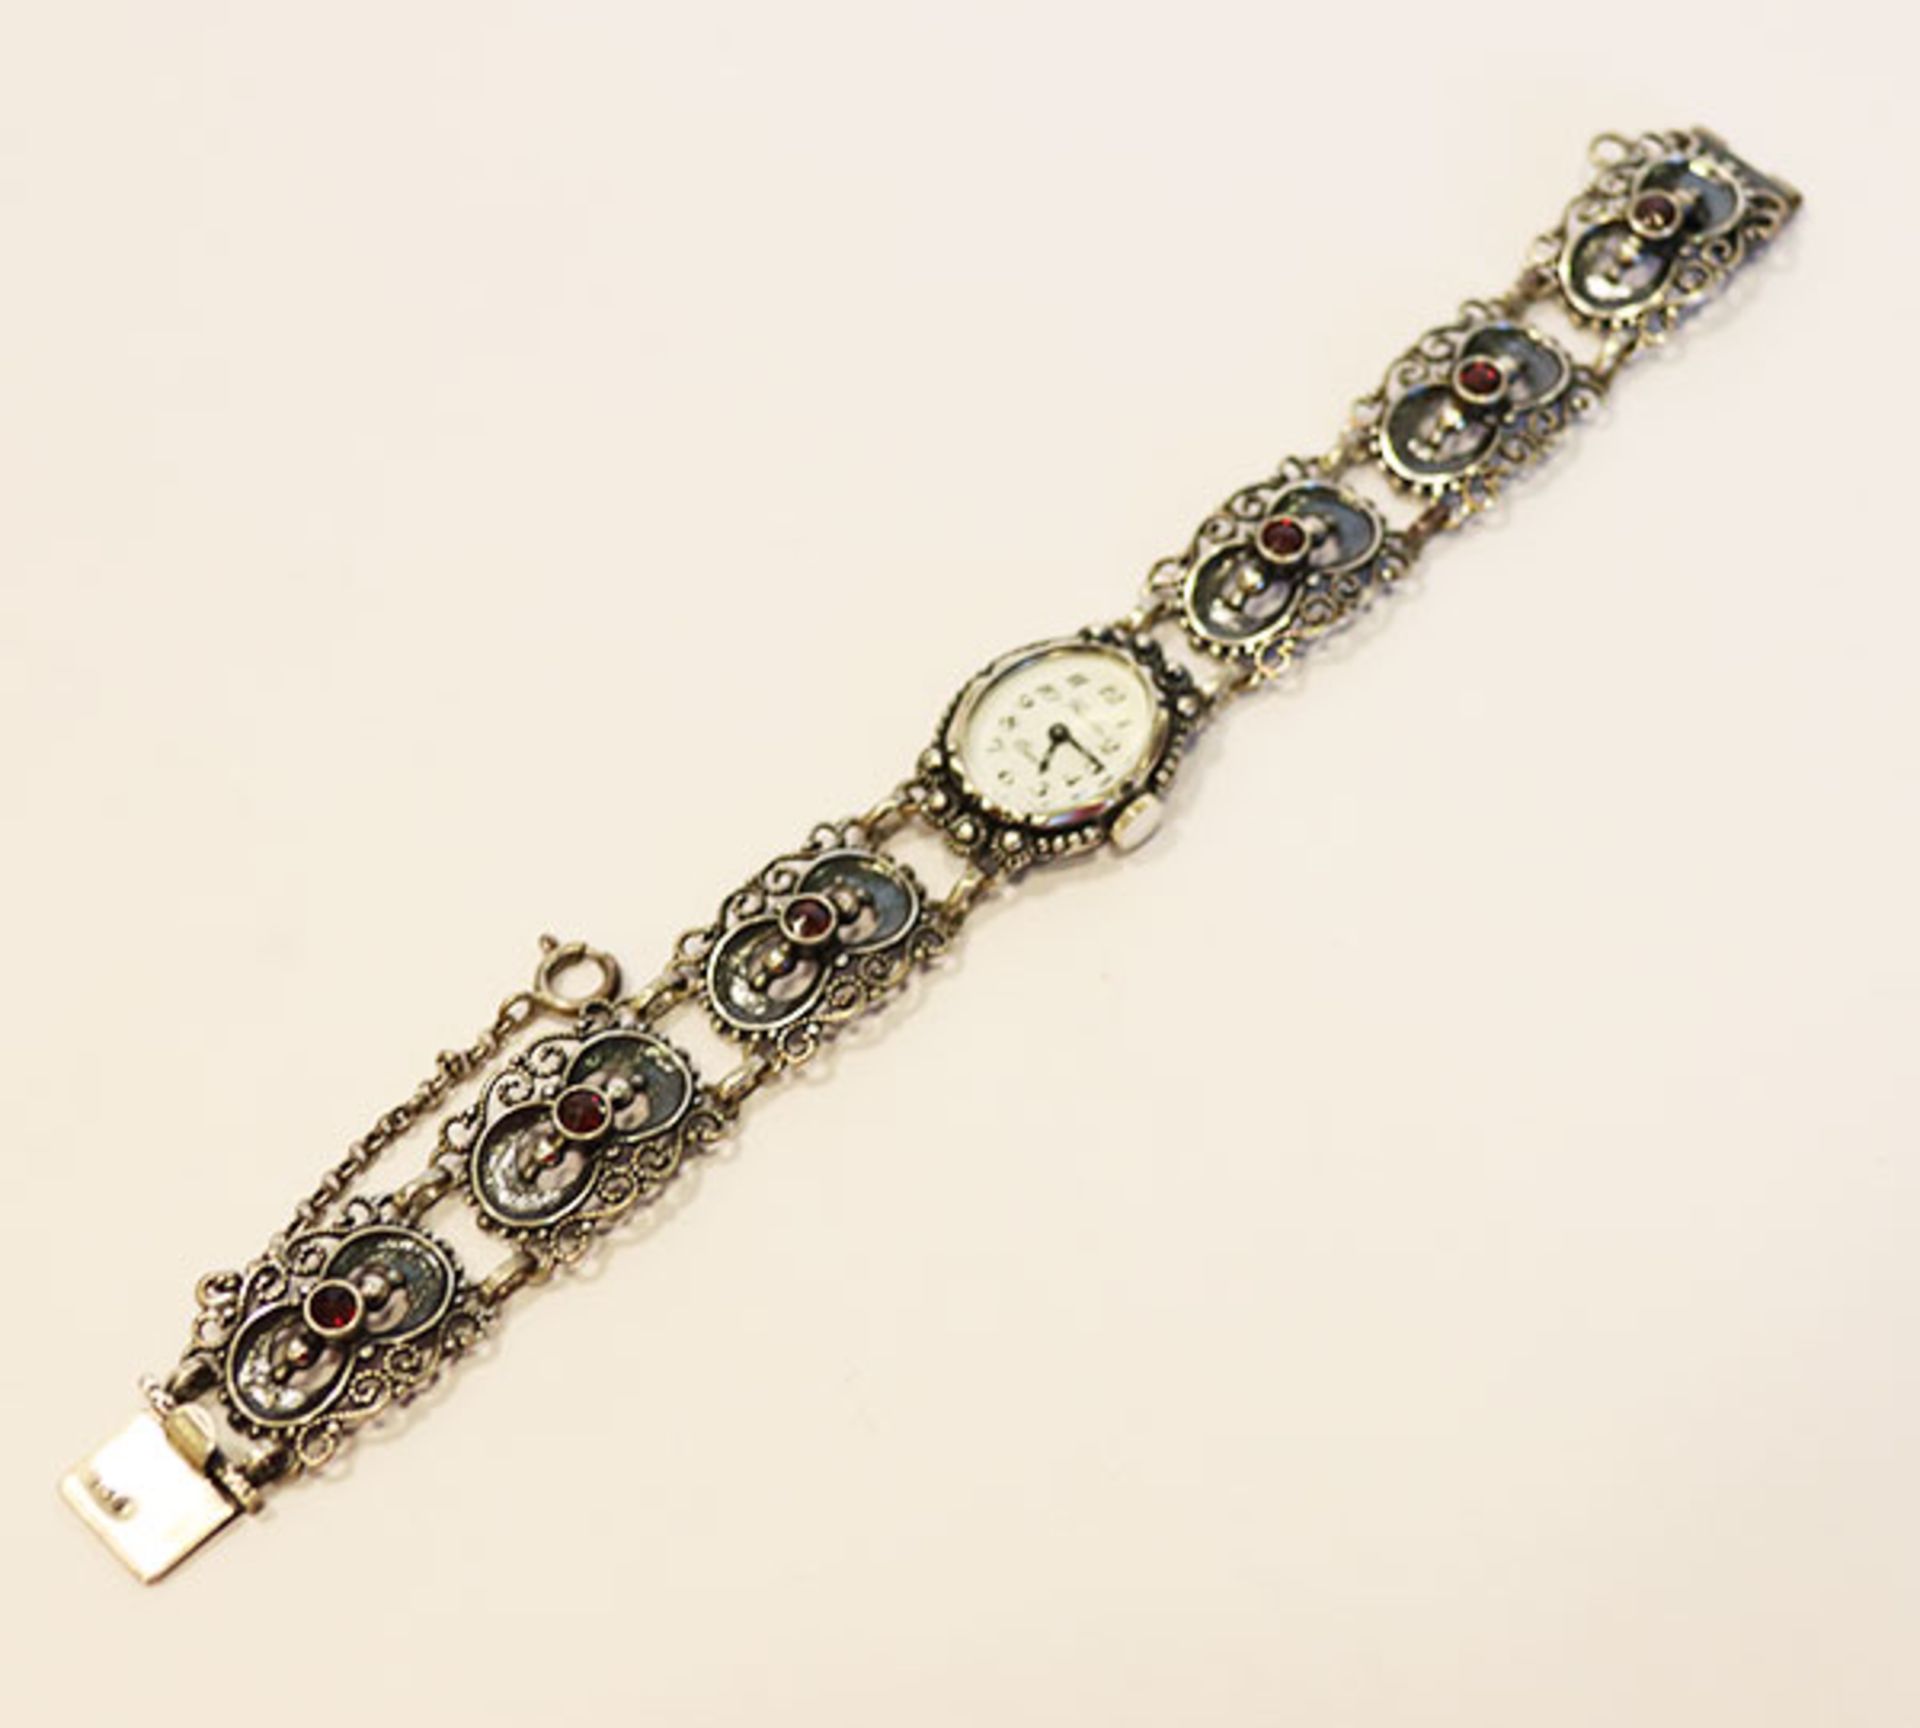 Silber Trachten-Armbanduhr mit Granaten, Firma Fischer, Quarzwerk, benötigt neue Batterie, 24 gr., L